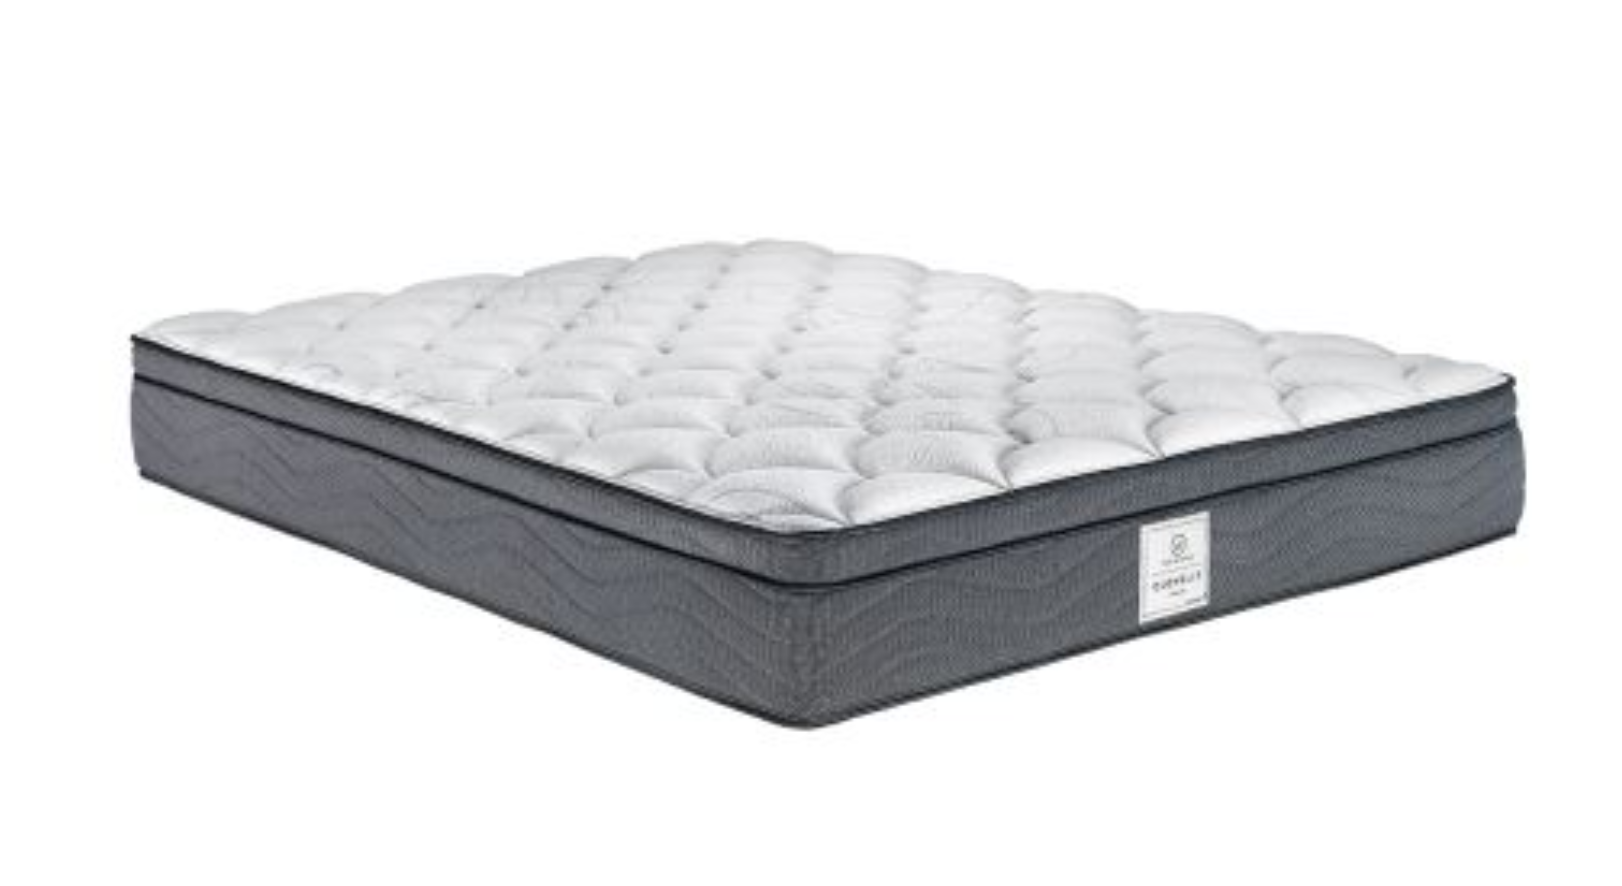 whitehaven clovelly medium queen mattress